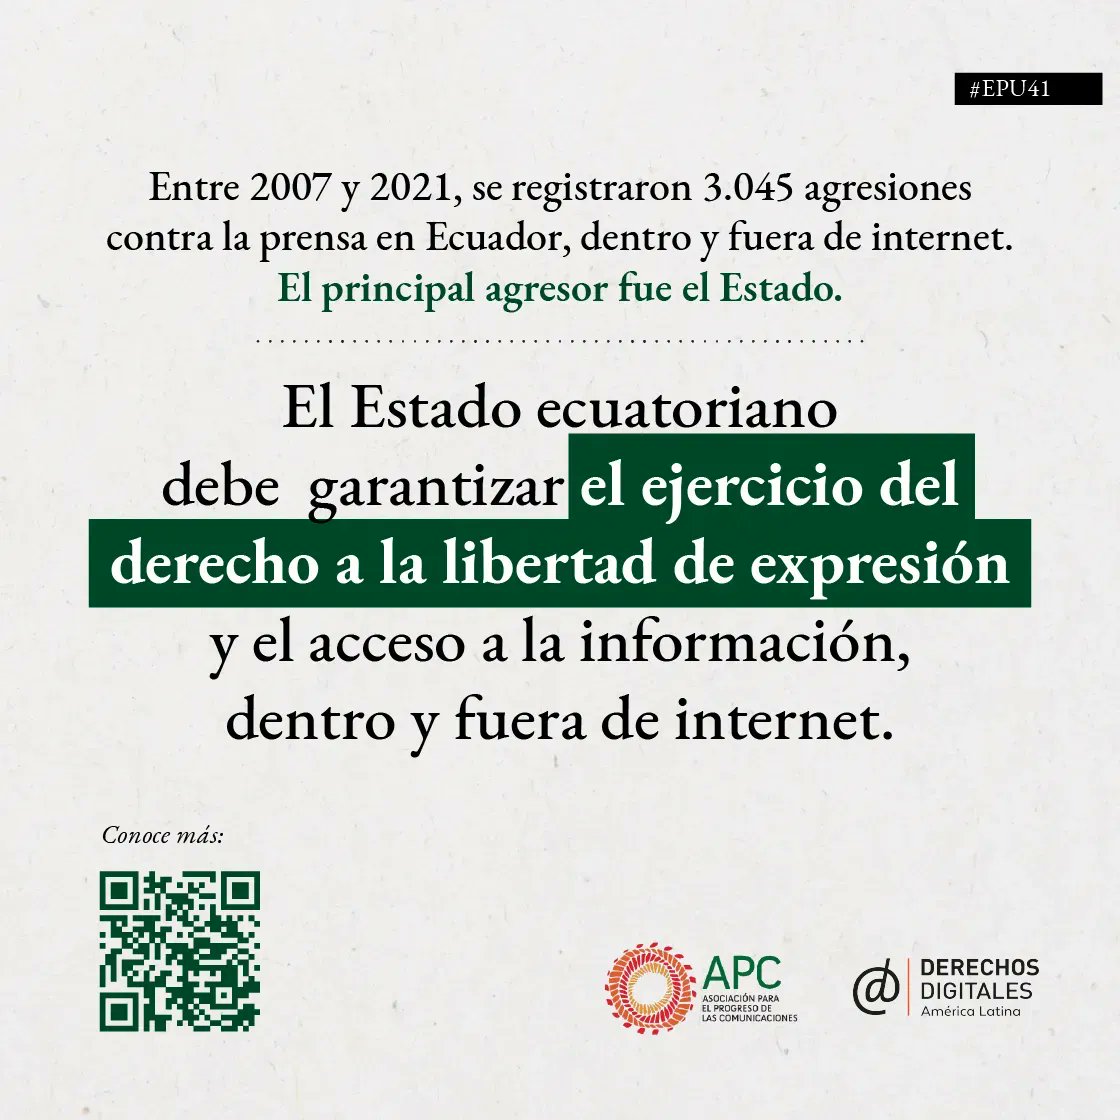 #EPU41 #ECUADOR: El estado ecuatoriano debe garantizar el ejercicio del derecho de la #LibertadDeExpresion